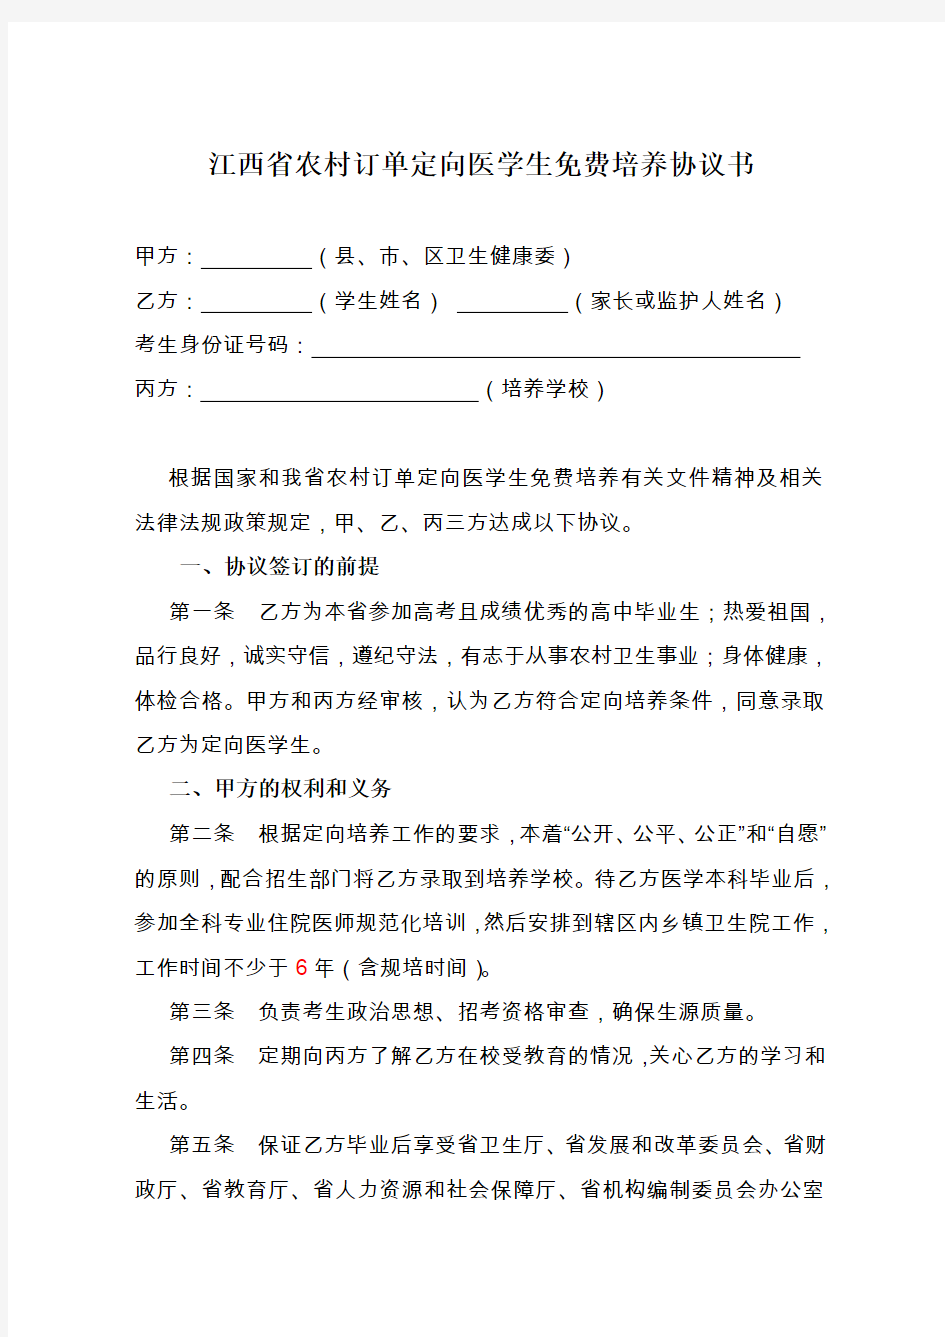 江西省农村订单定向医学生免费培养